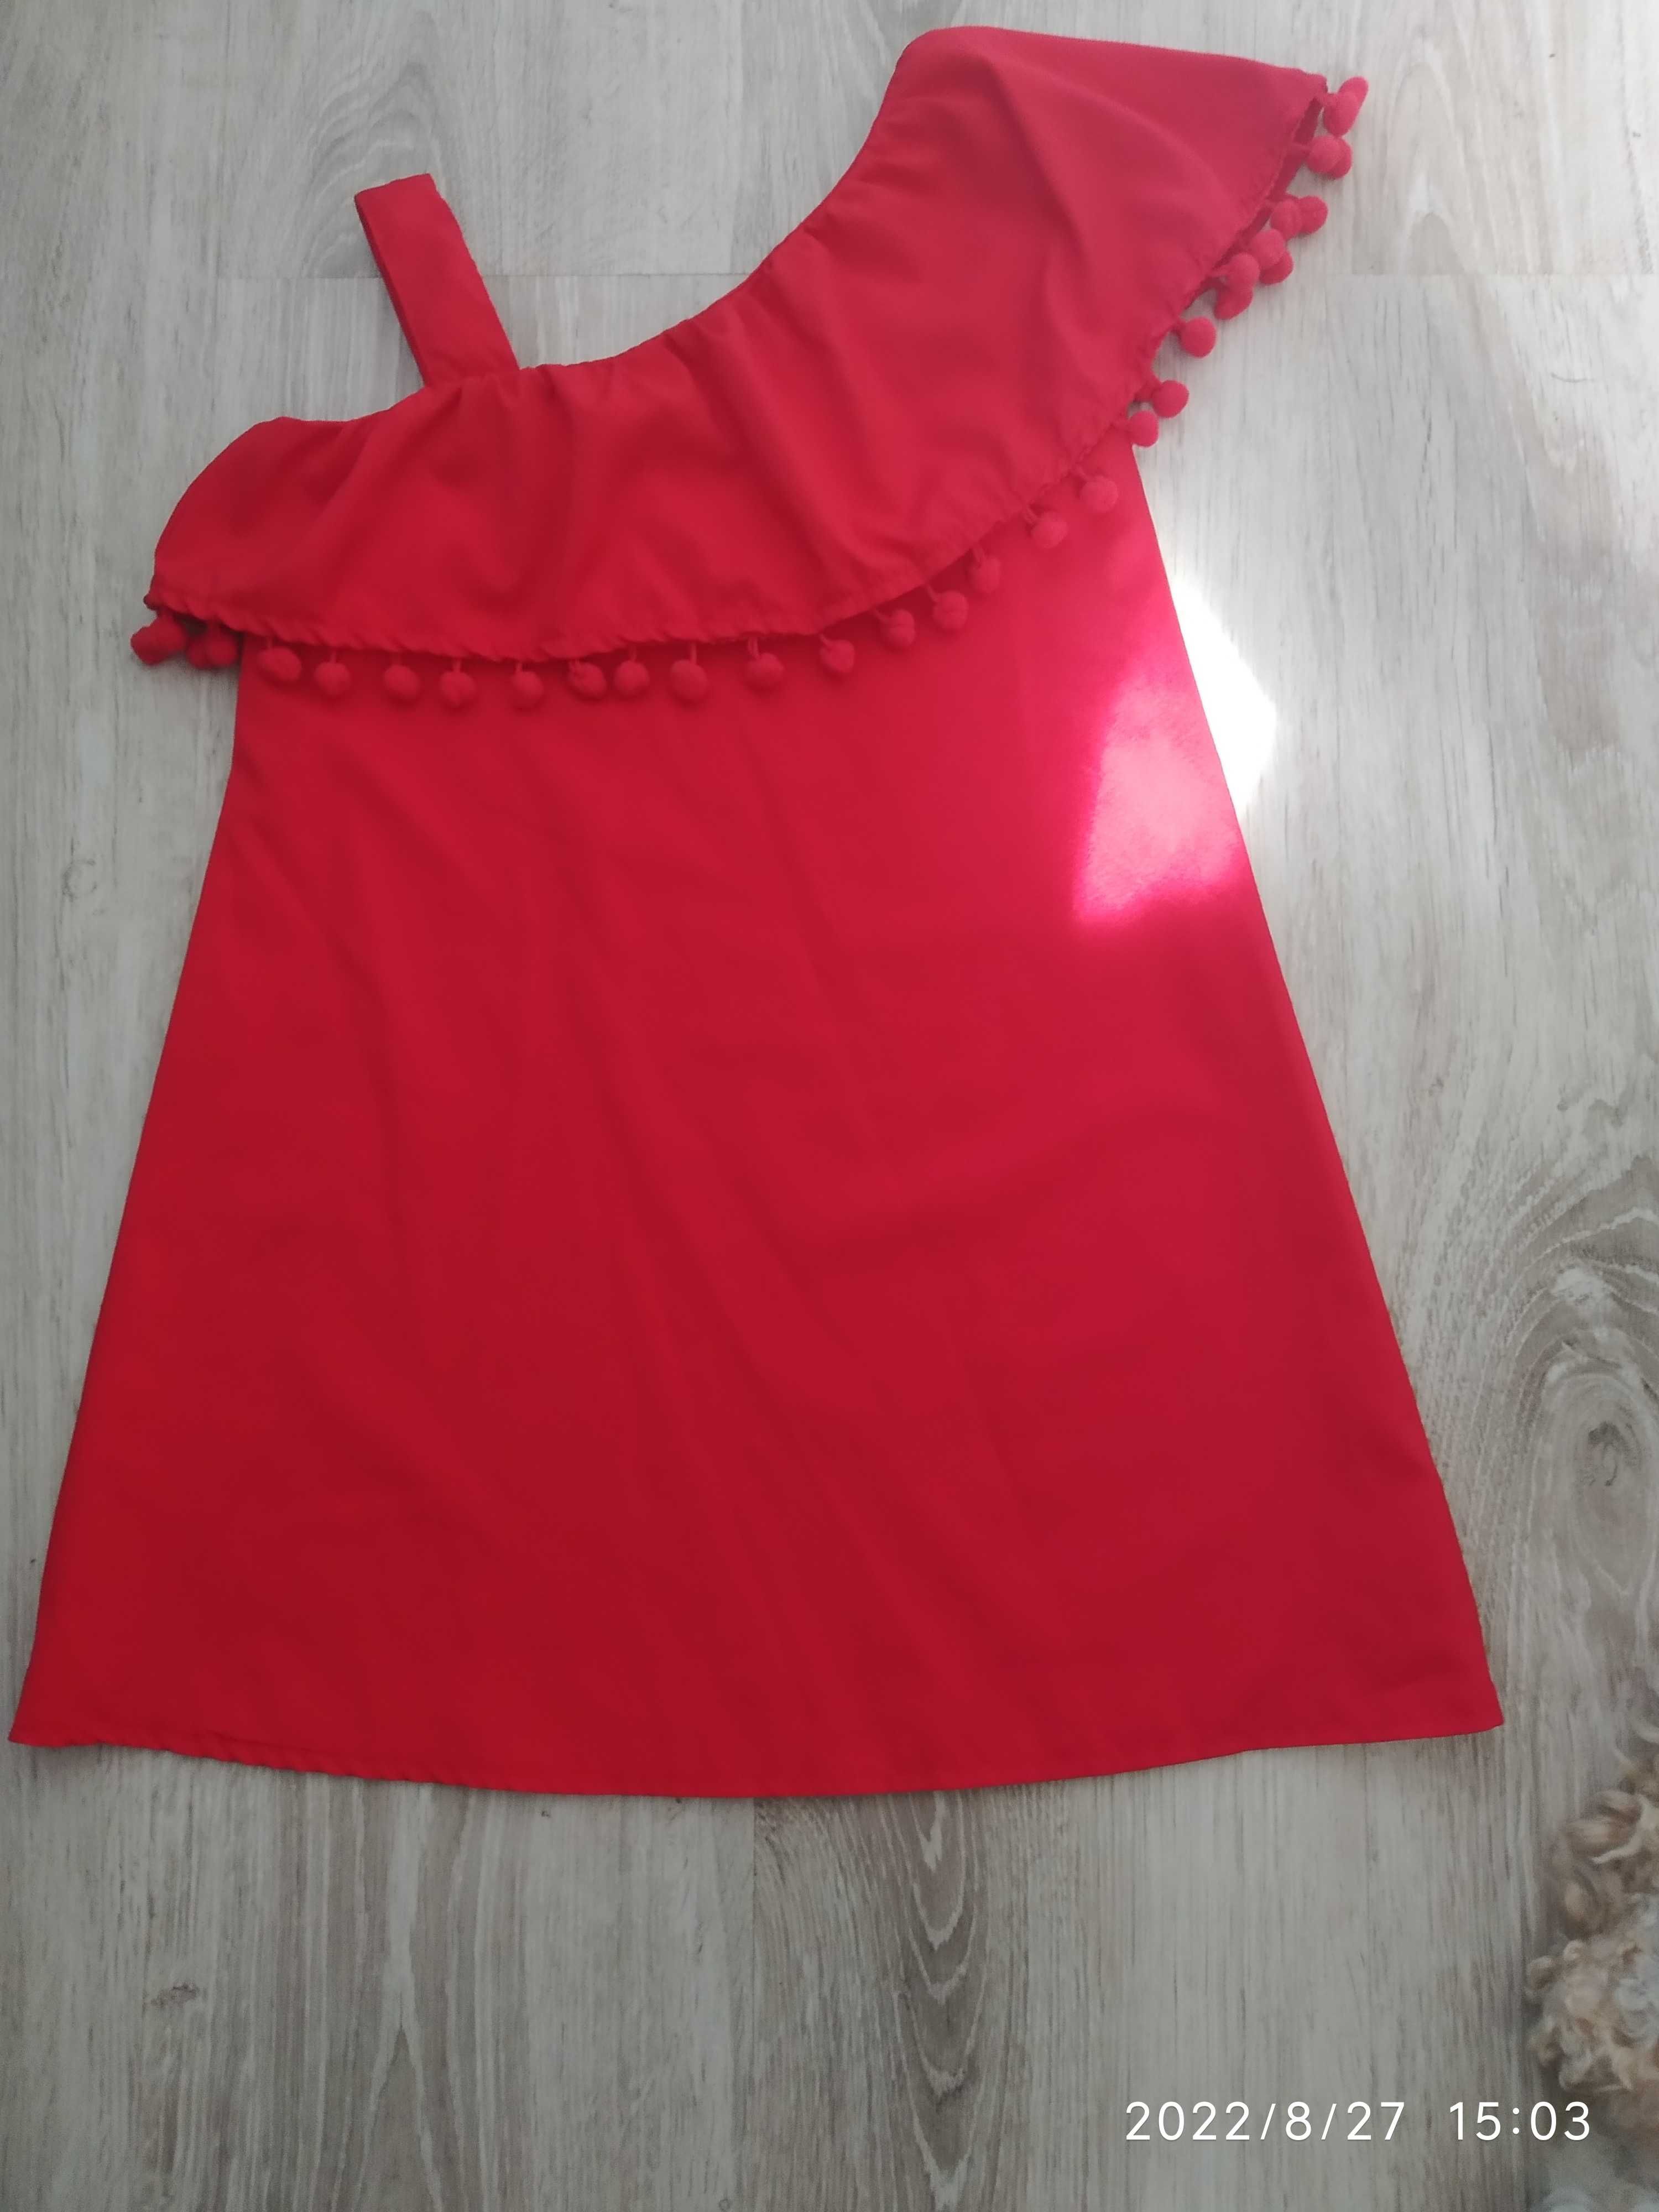 Czerwona sukienka na wesele/uroczystości/chrzest/komunia